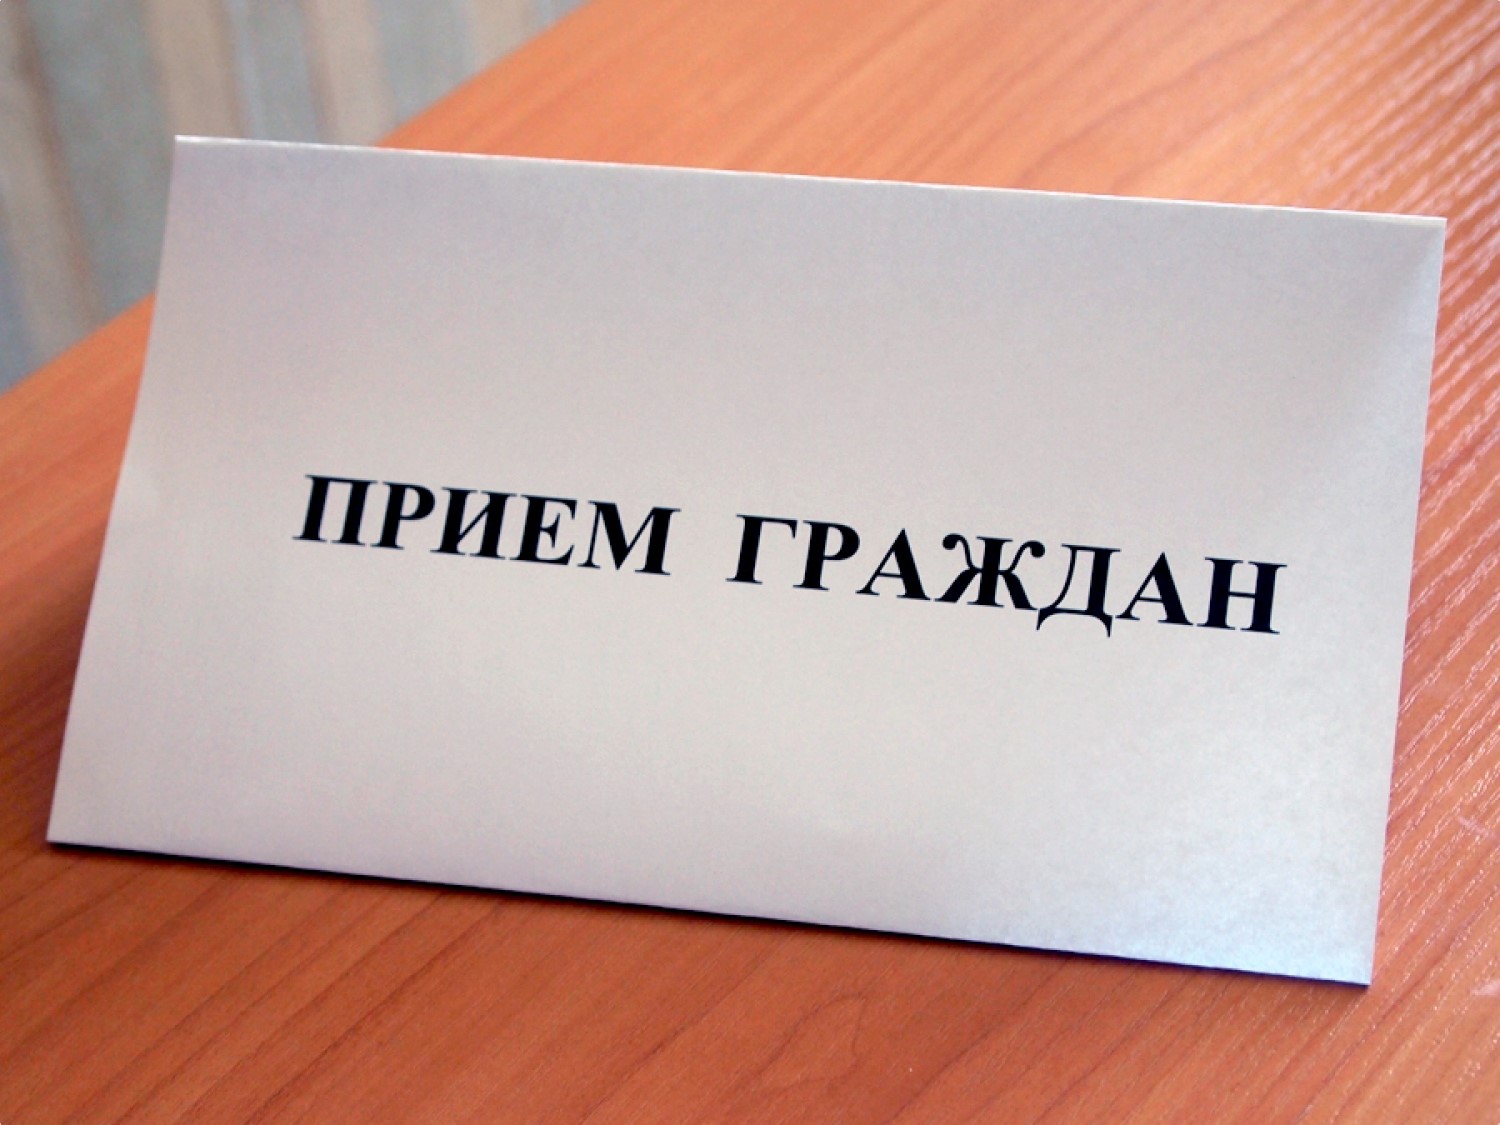 В субботу, 6 мая, пройдет личный прием главы Ртищевского муниципального района Александра Жуковского участников СВО, их родных и близких.